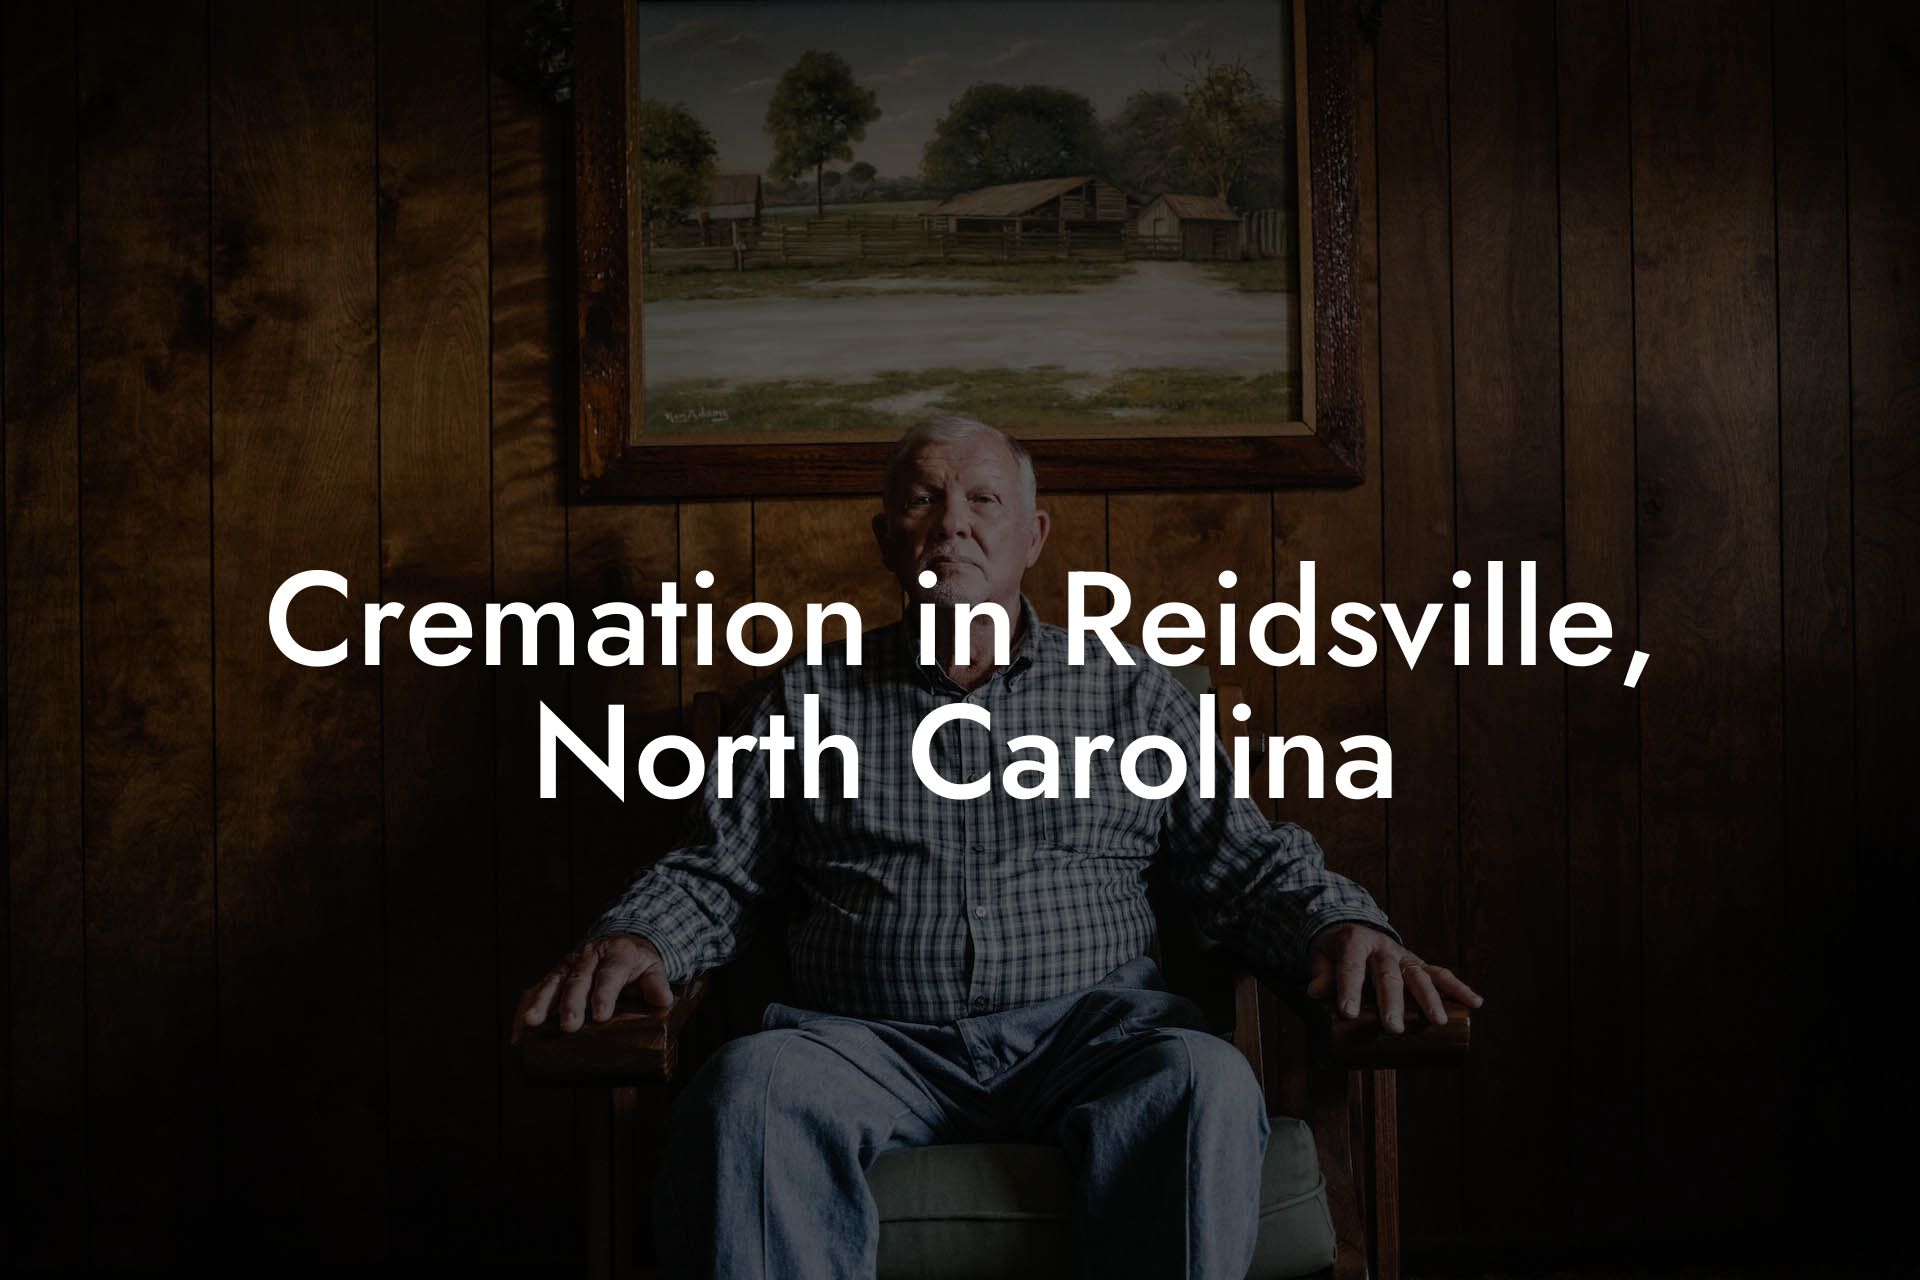 Cremation in Reidsville, North Carolina